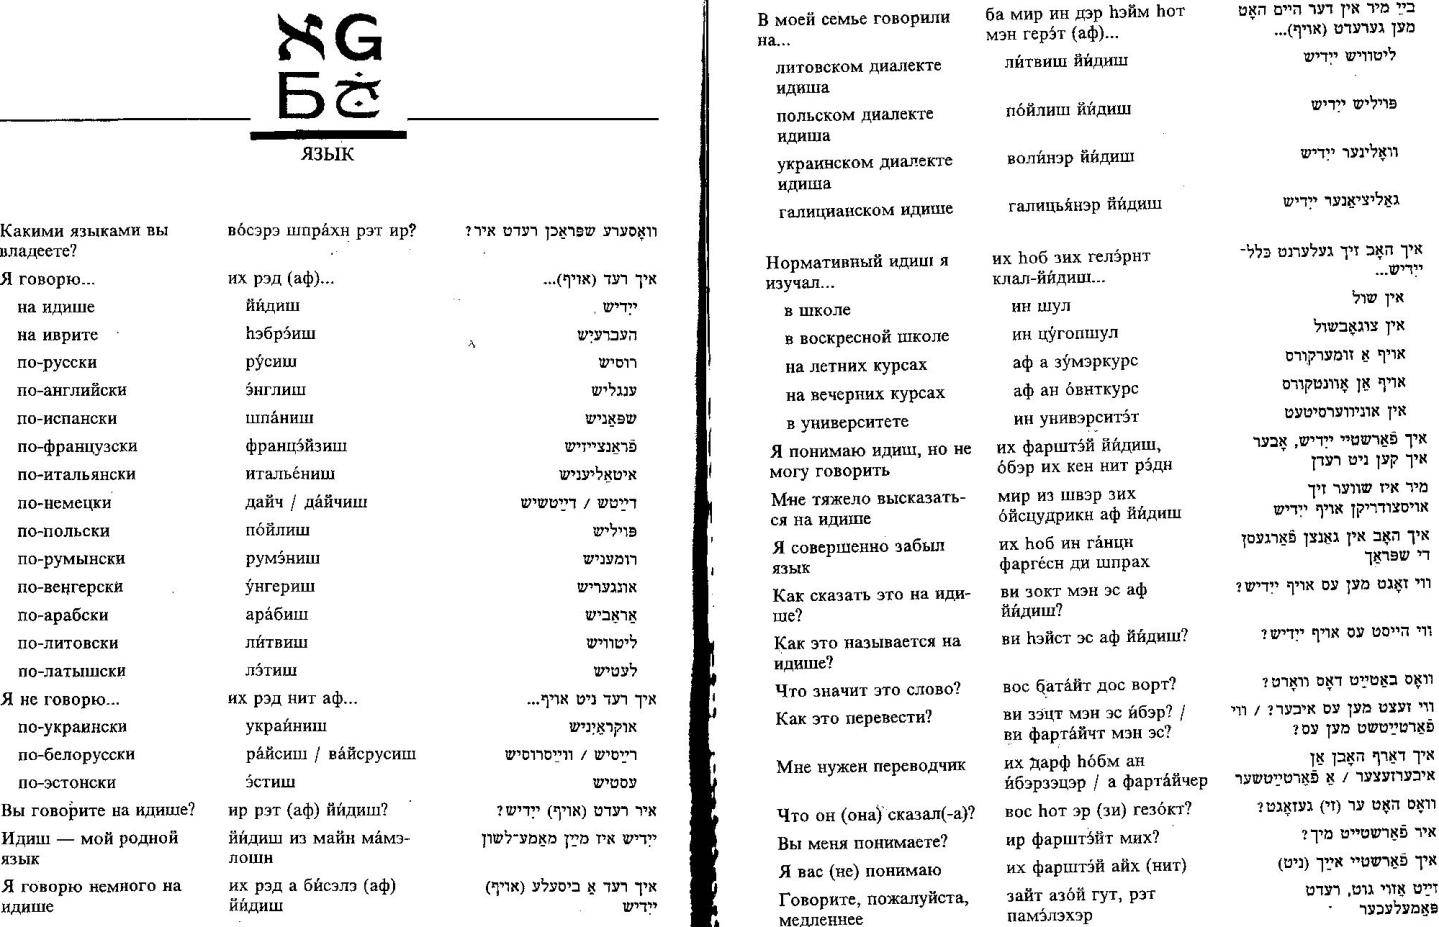 Какой язык в израиле? узнайте на каком языке говорят  жители израиля